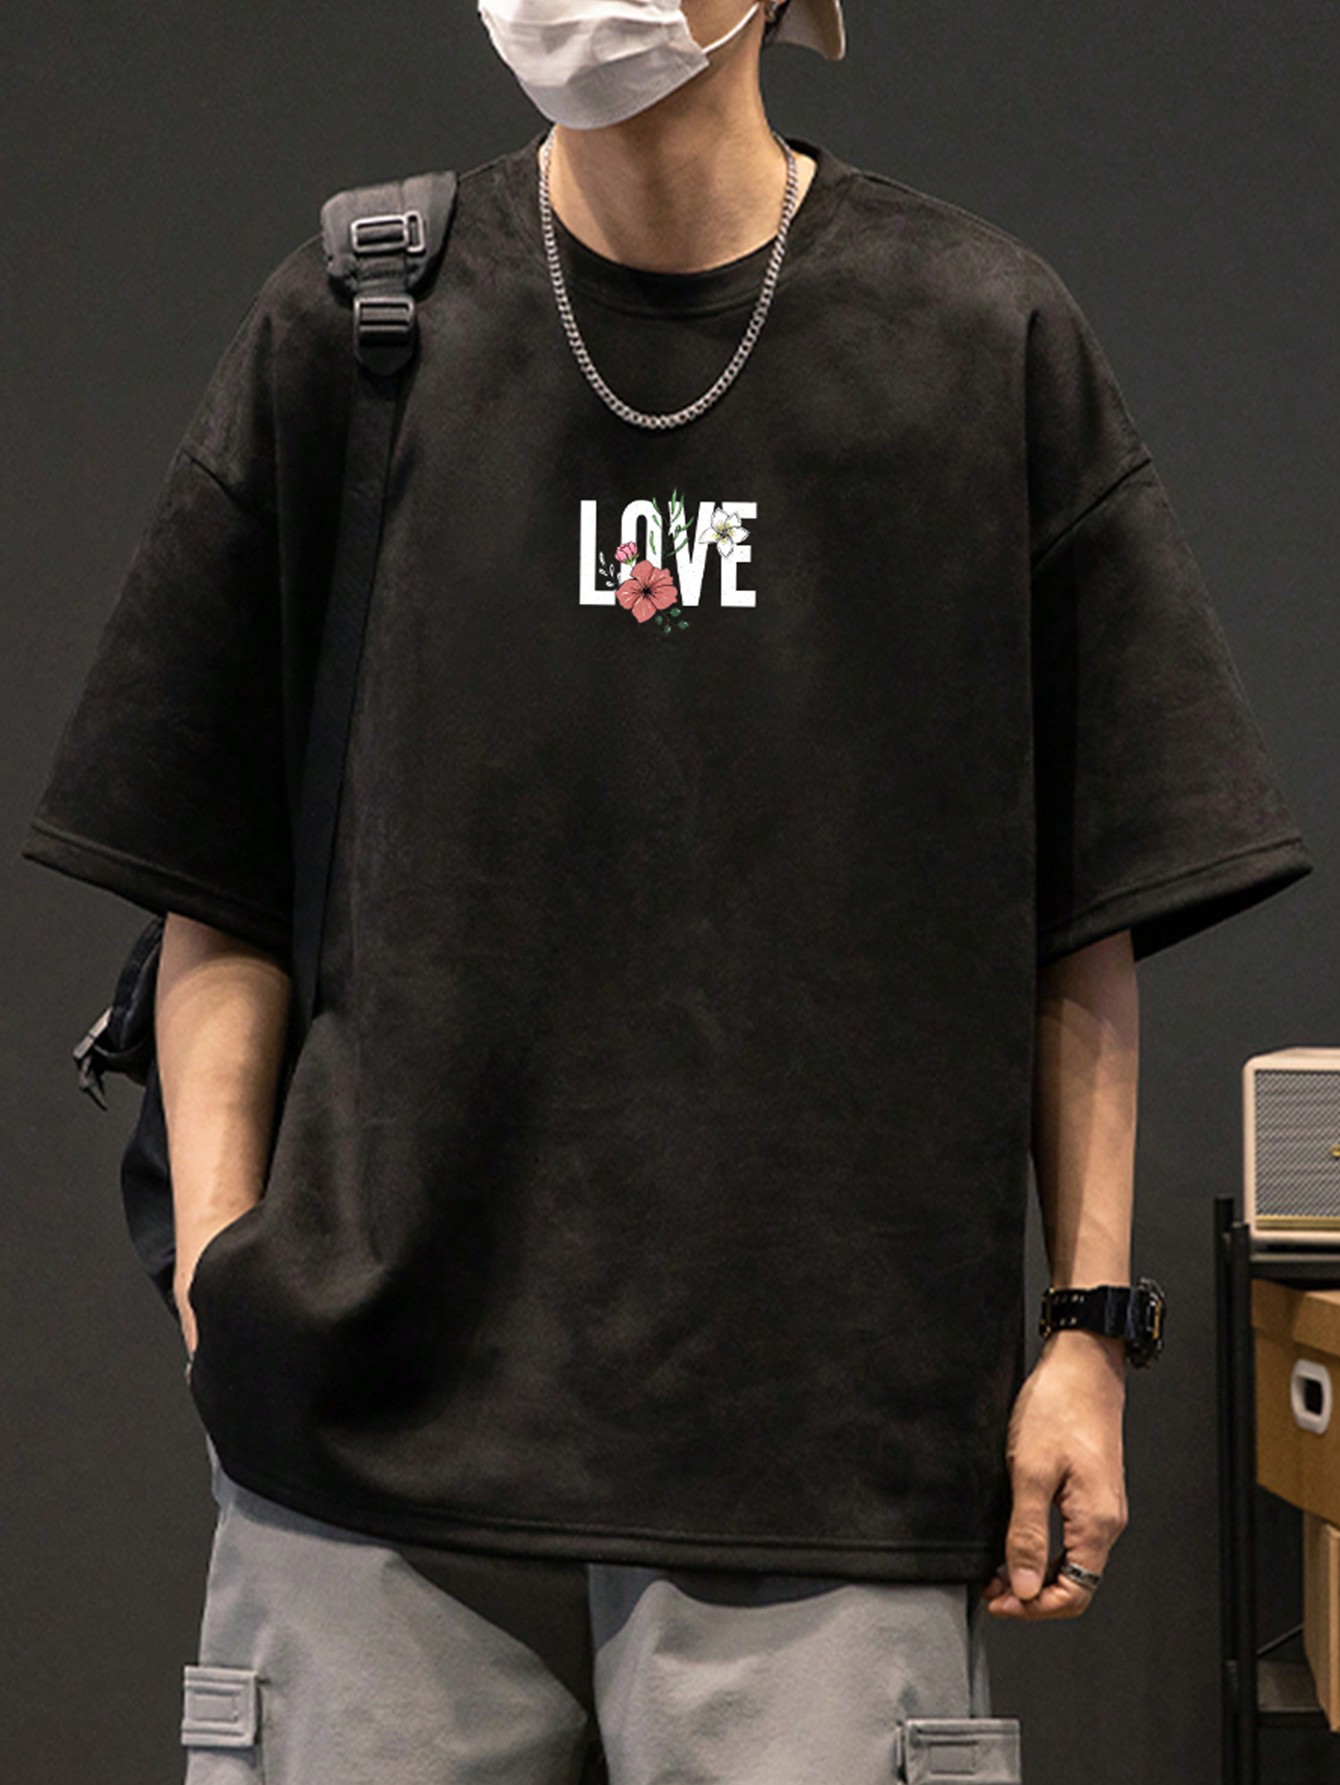 Мужская футболка с заниженными плечами и буквенным принтом, черный фотографии